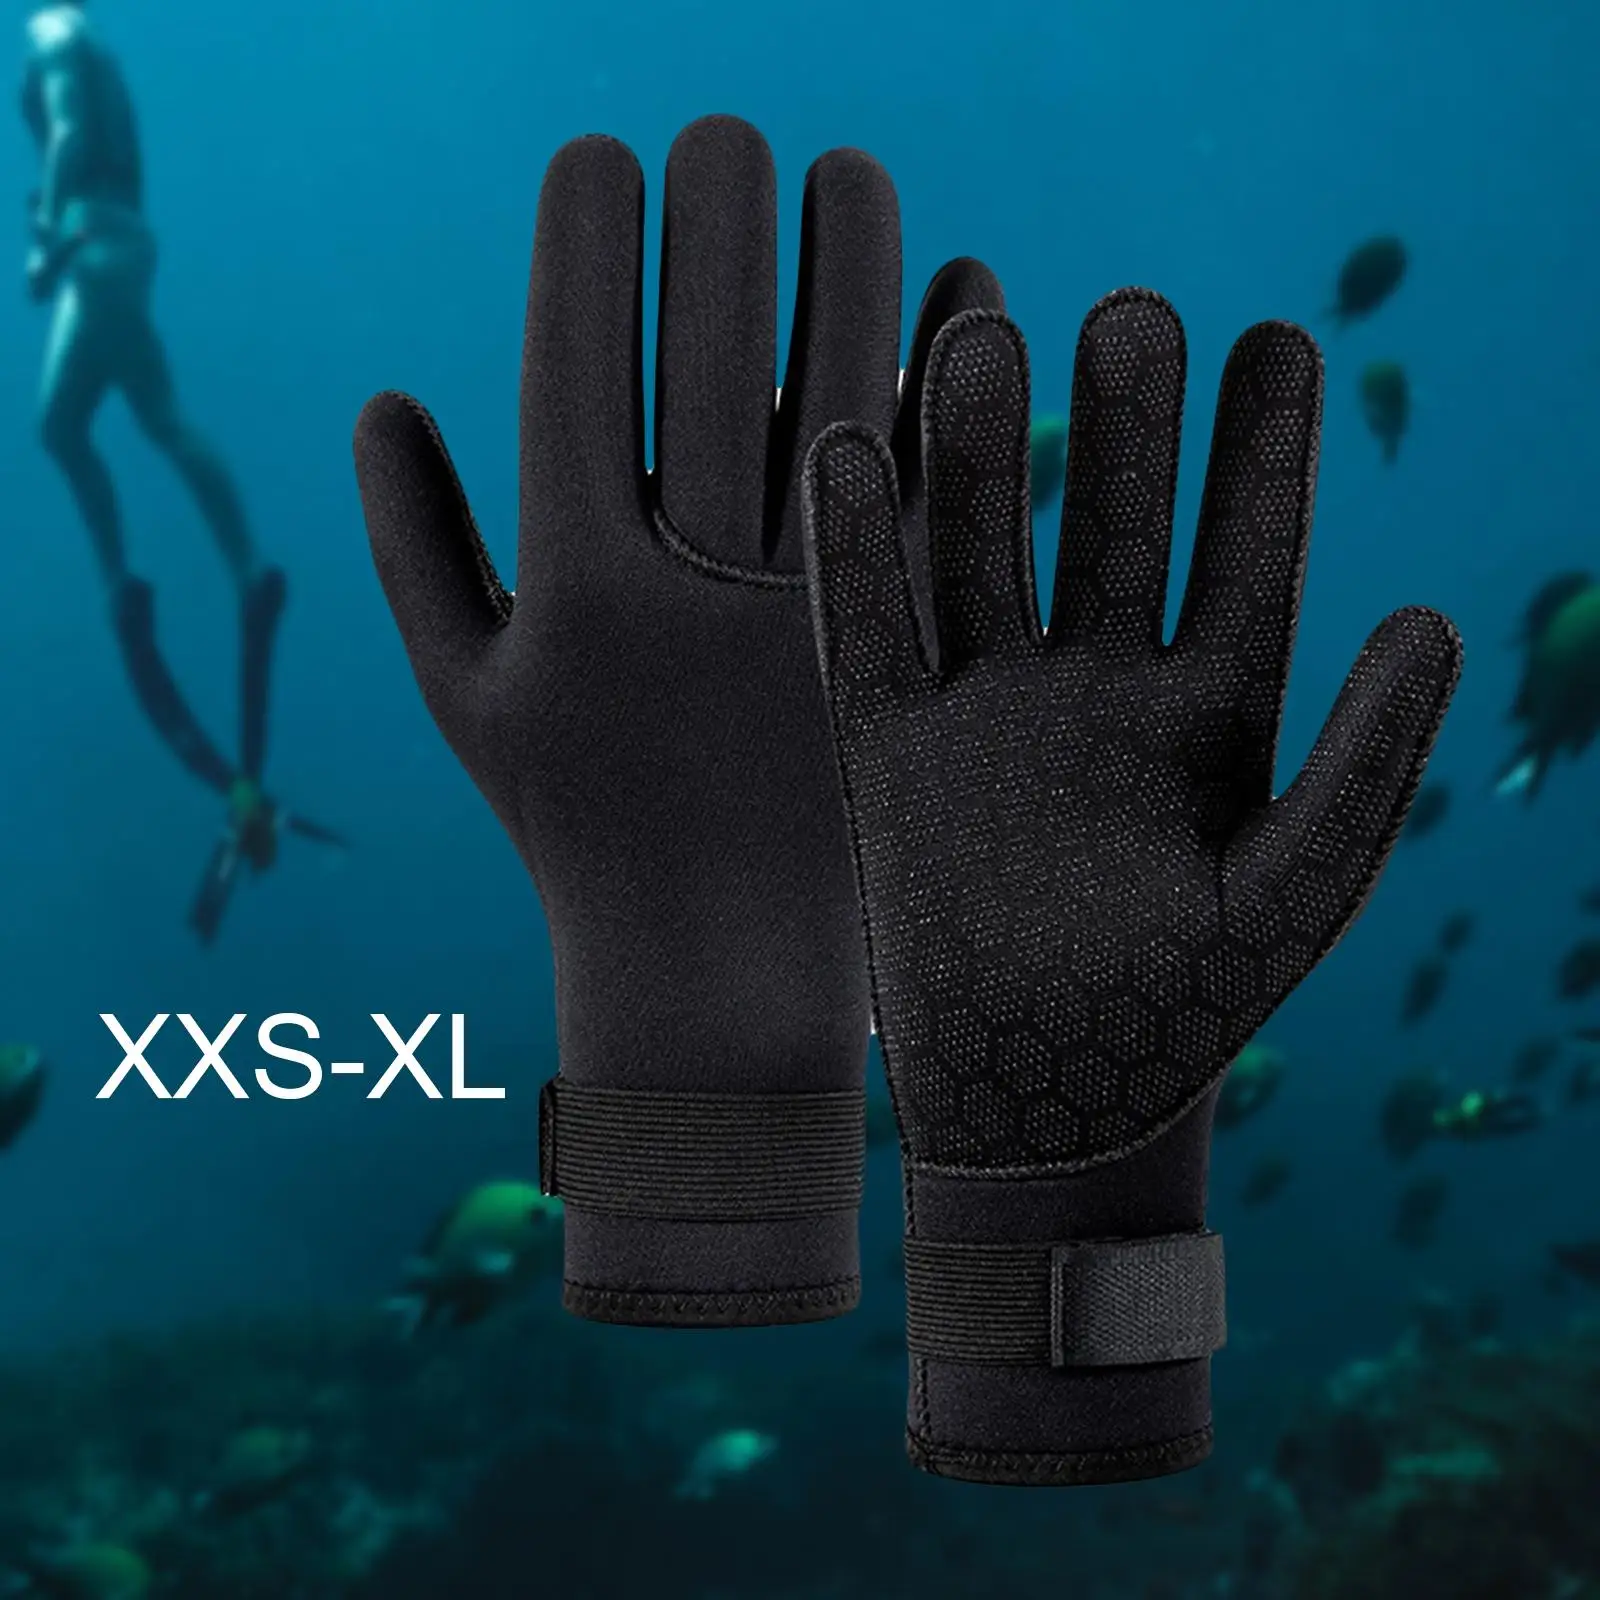 3mm Neoprene Gloves Dive Gloves Diving Gloves for Men Women Canoe Fishing